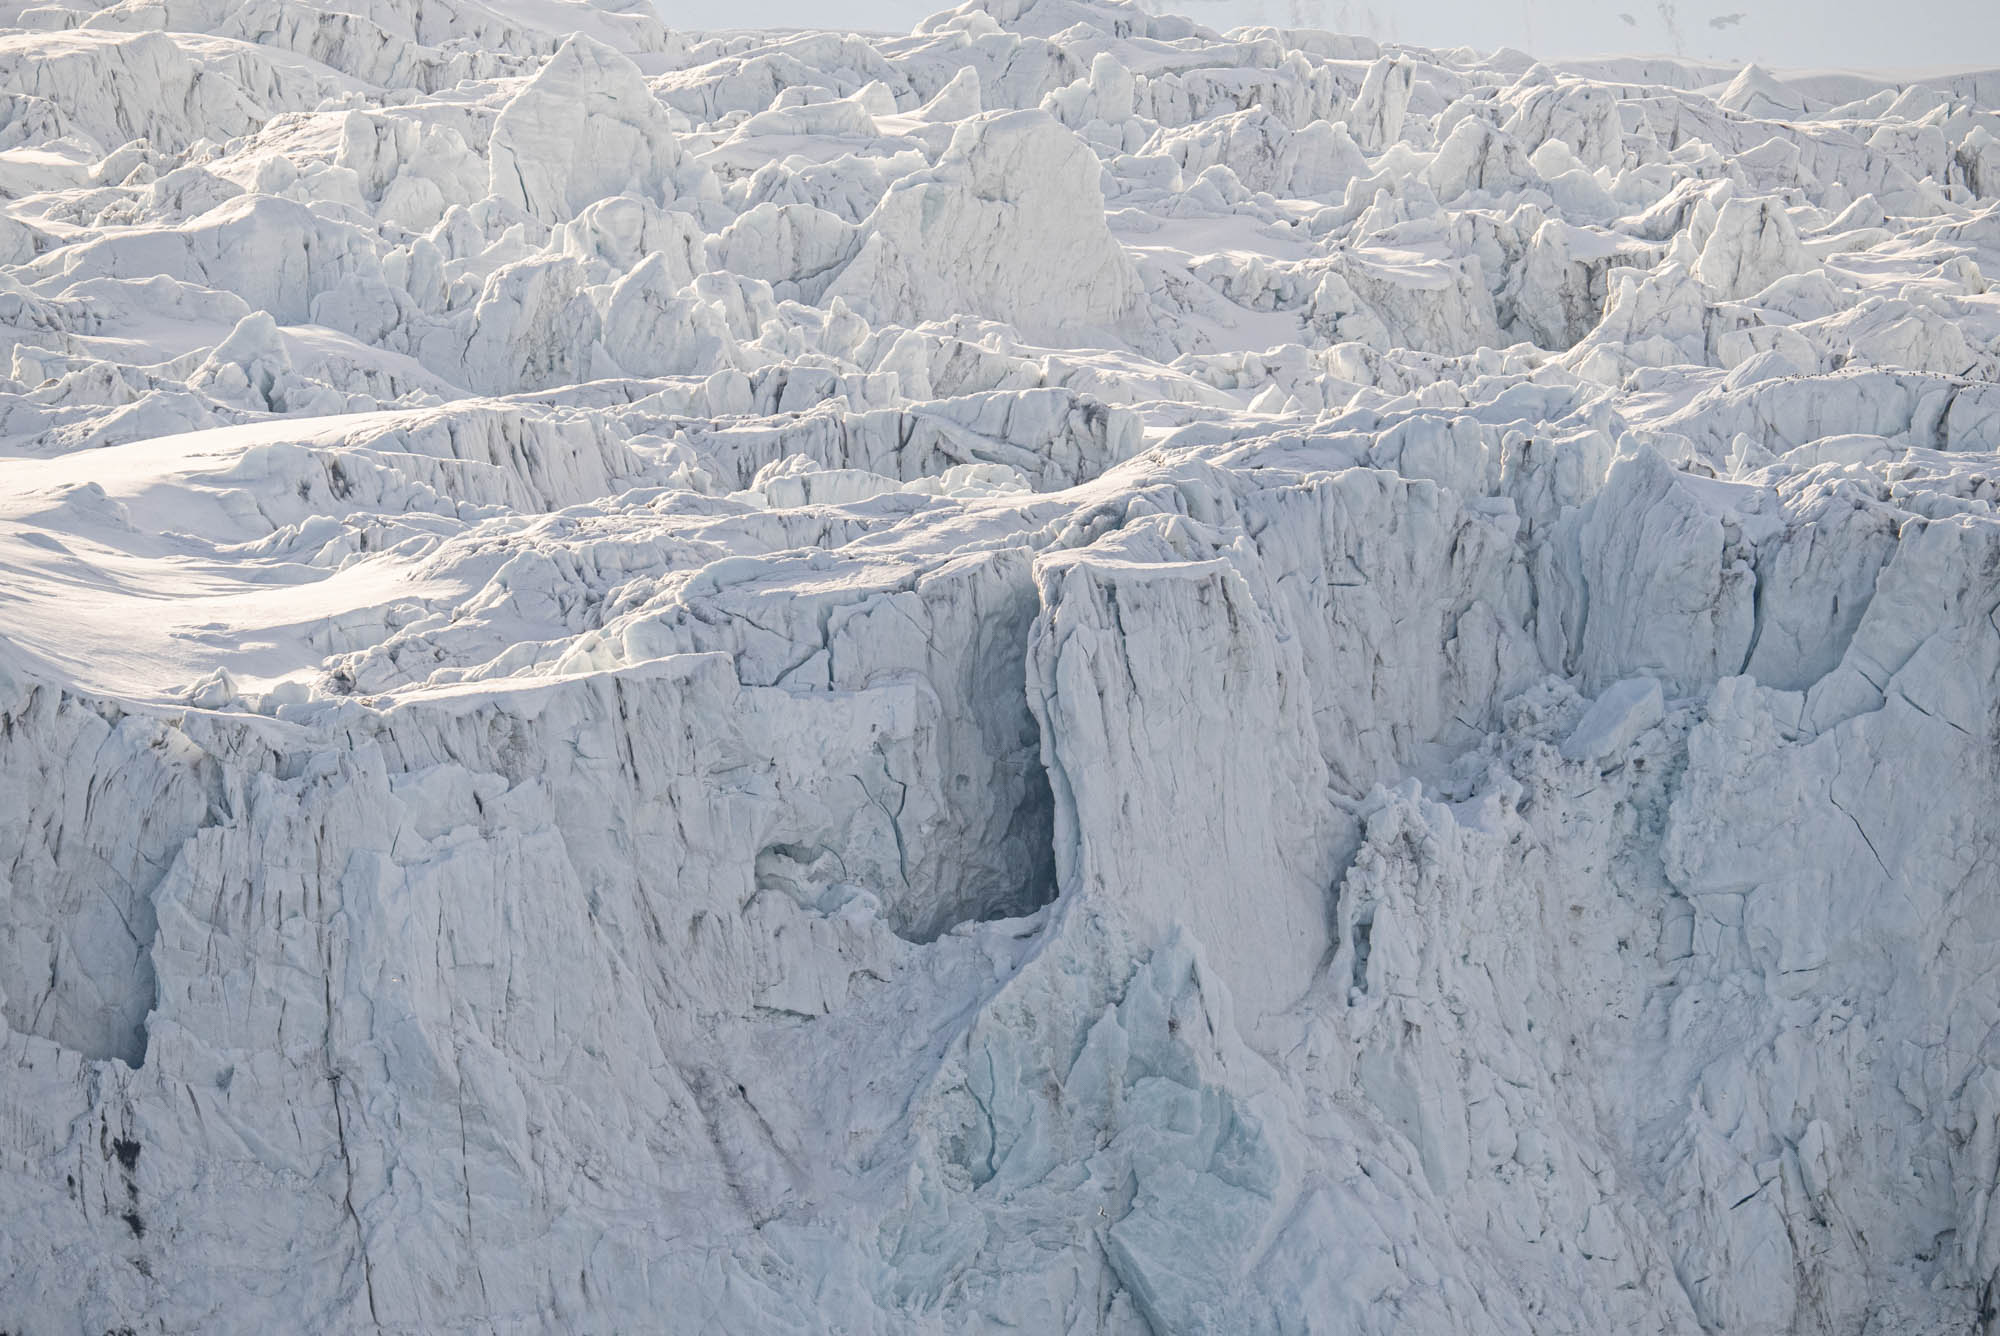 Arktisreise mit dem SIGMA 150-600mm F5-6,3 DG DN OS | Sports © Michael Ginzburg